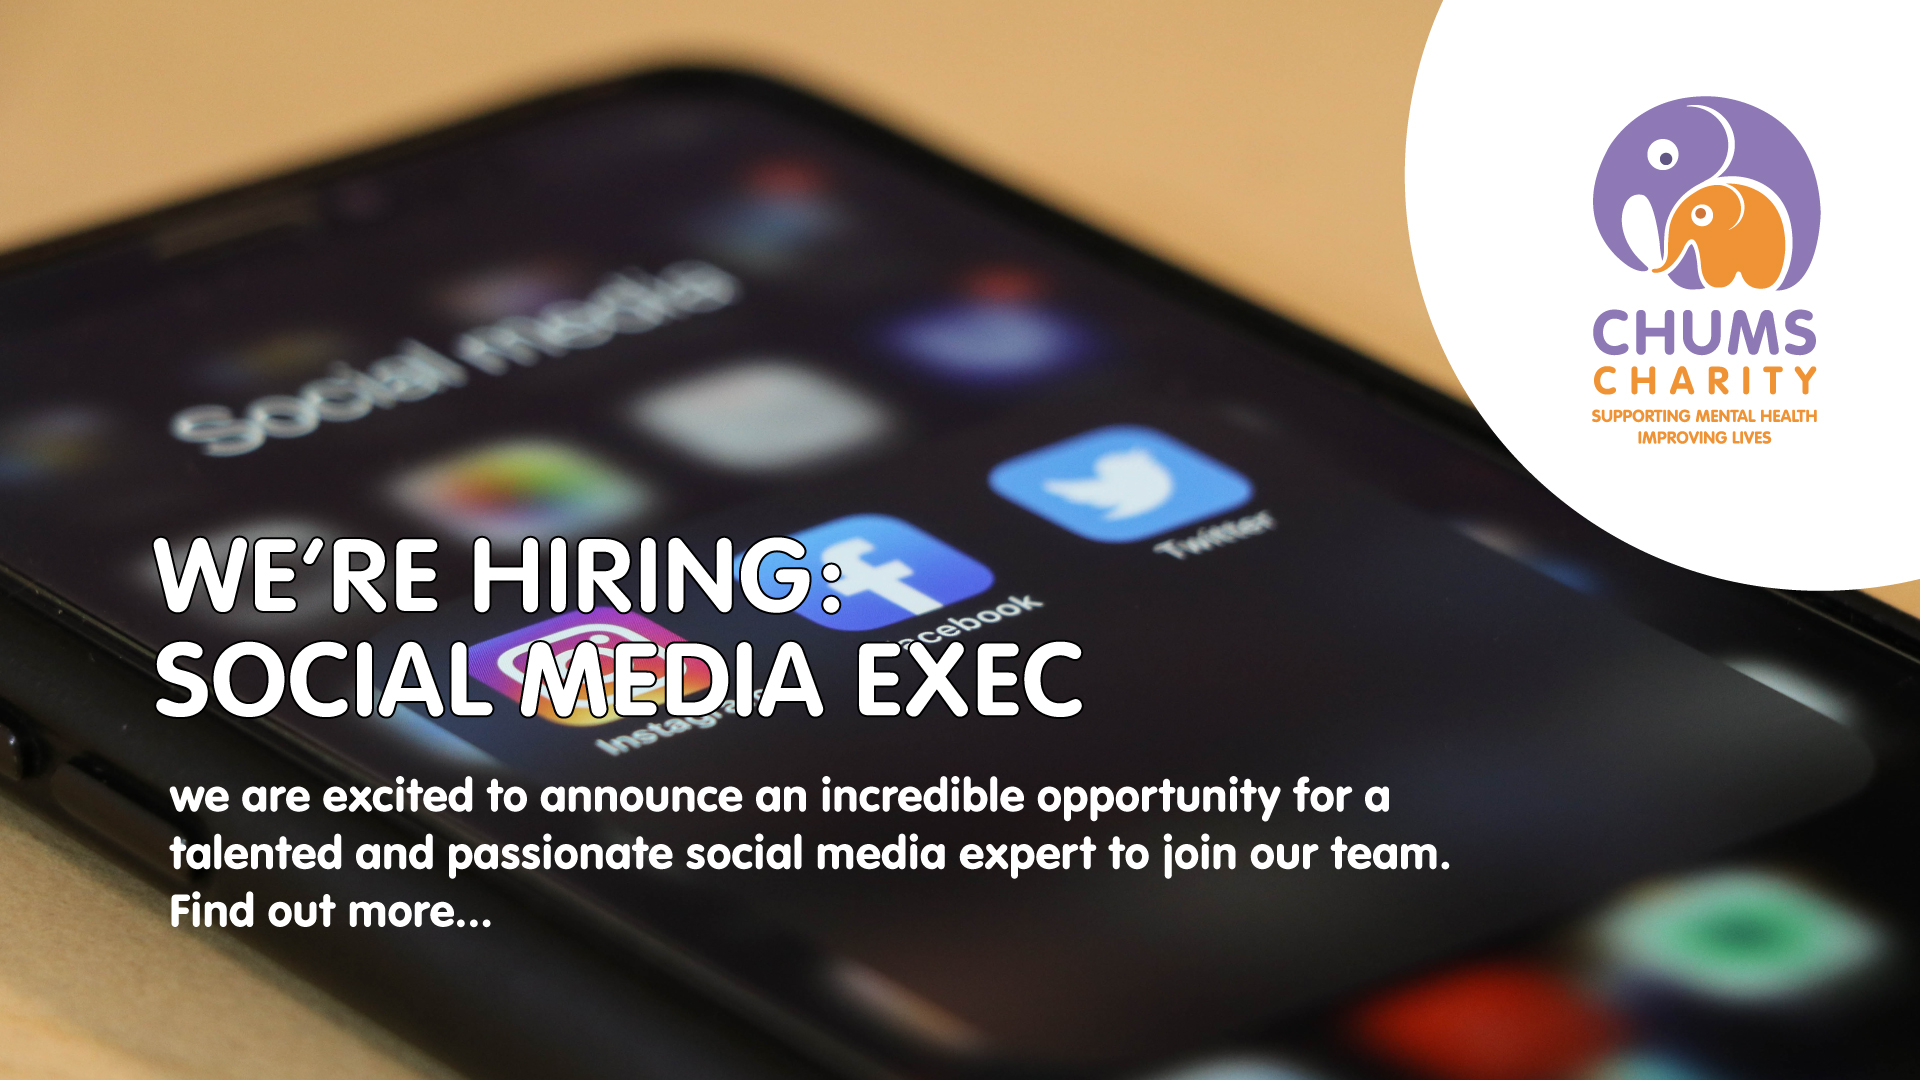 We're hiring a social media exec